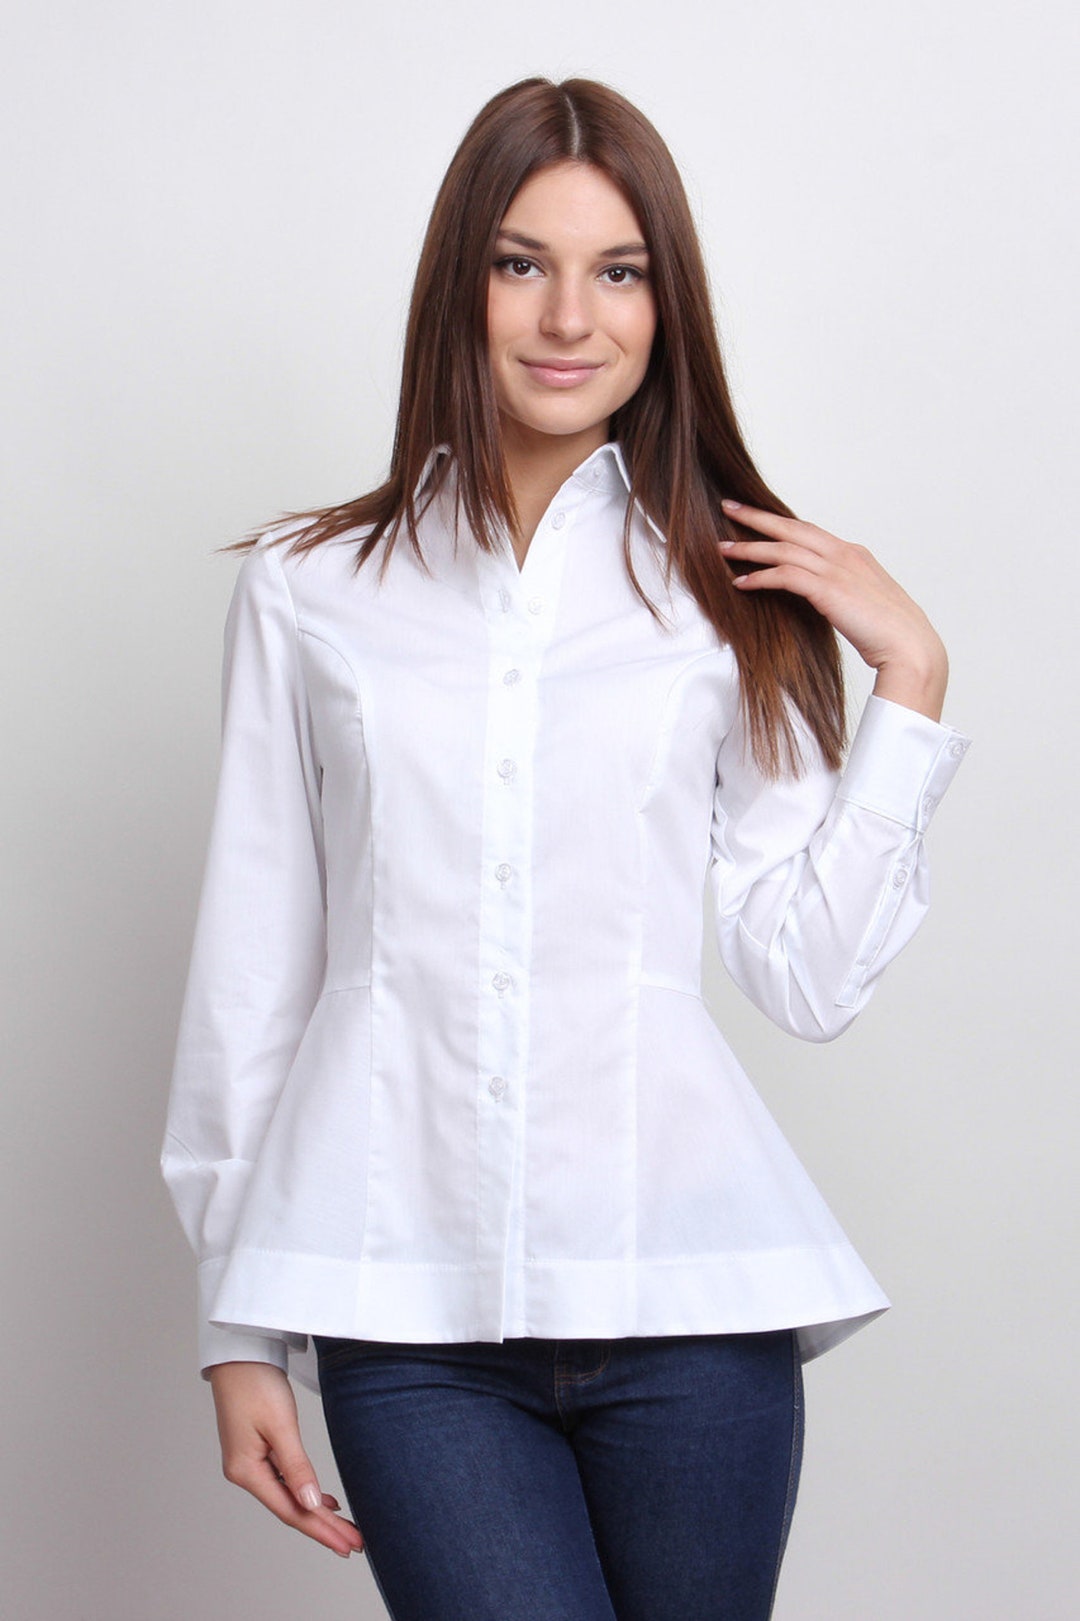 Designer White Women Shirts. Office Blouses. Business Female - Etsy